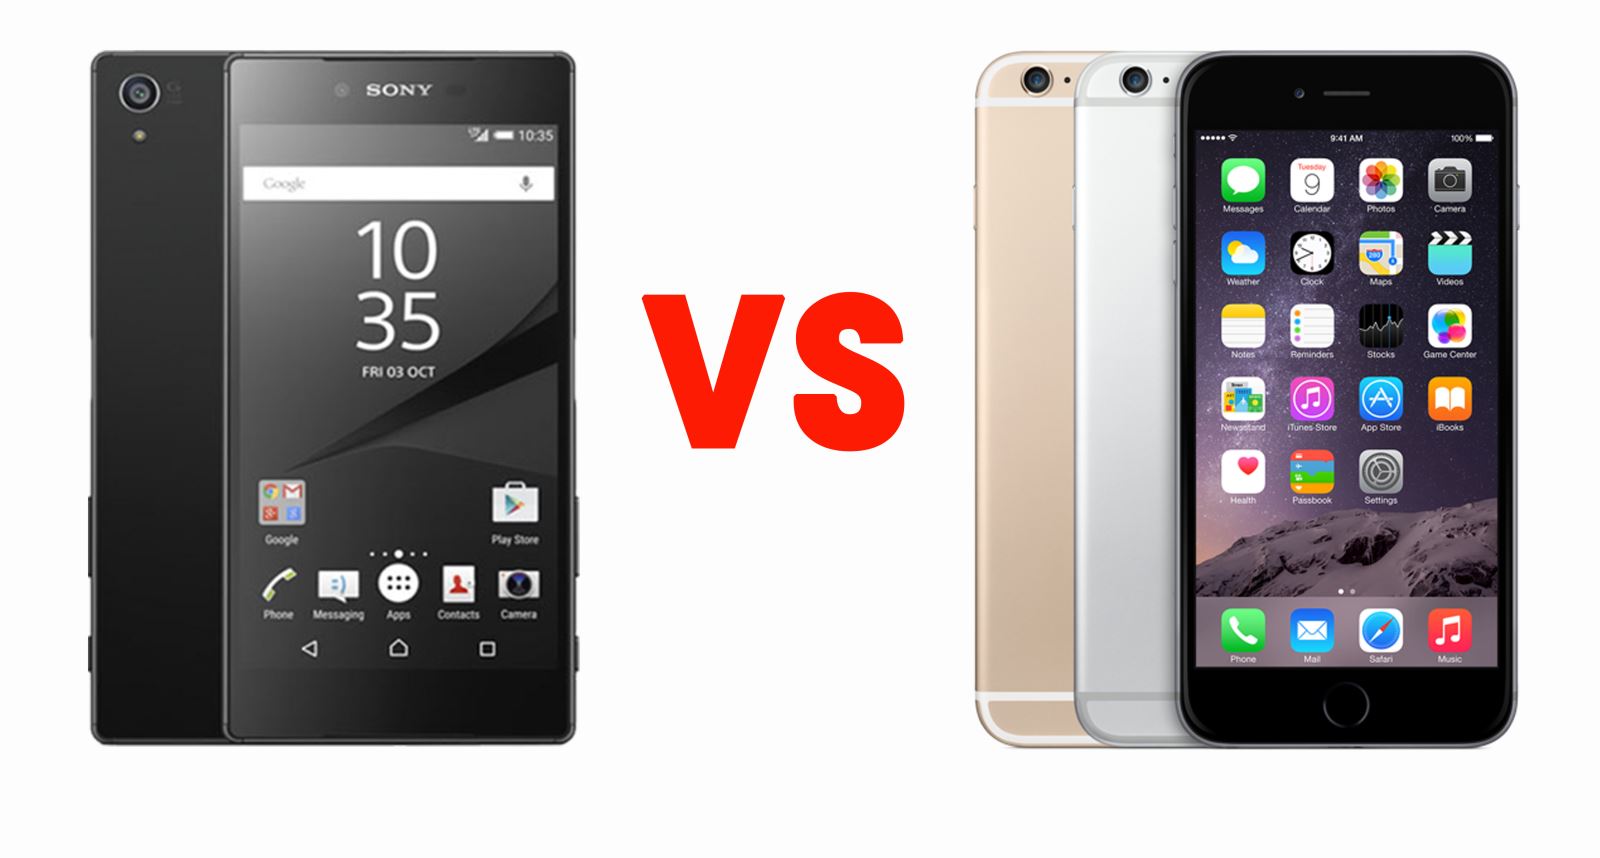 Cuộc chiến giữa Sony Xperia Z5 với iPhone 6 cũ trong tầm giá 4 triệu